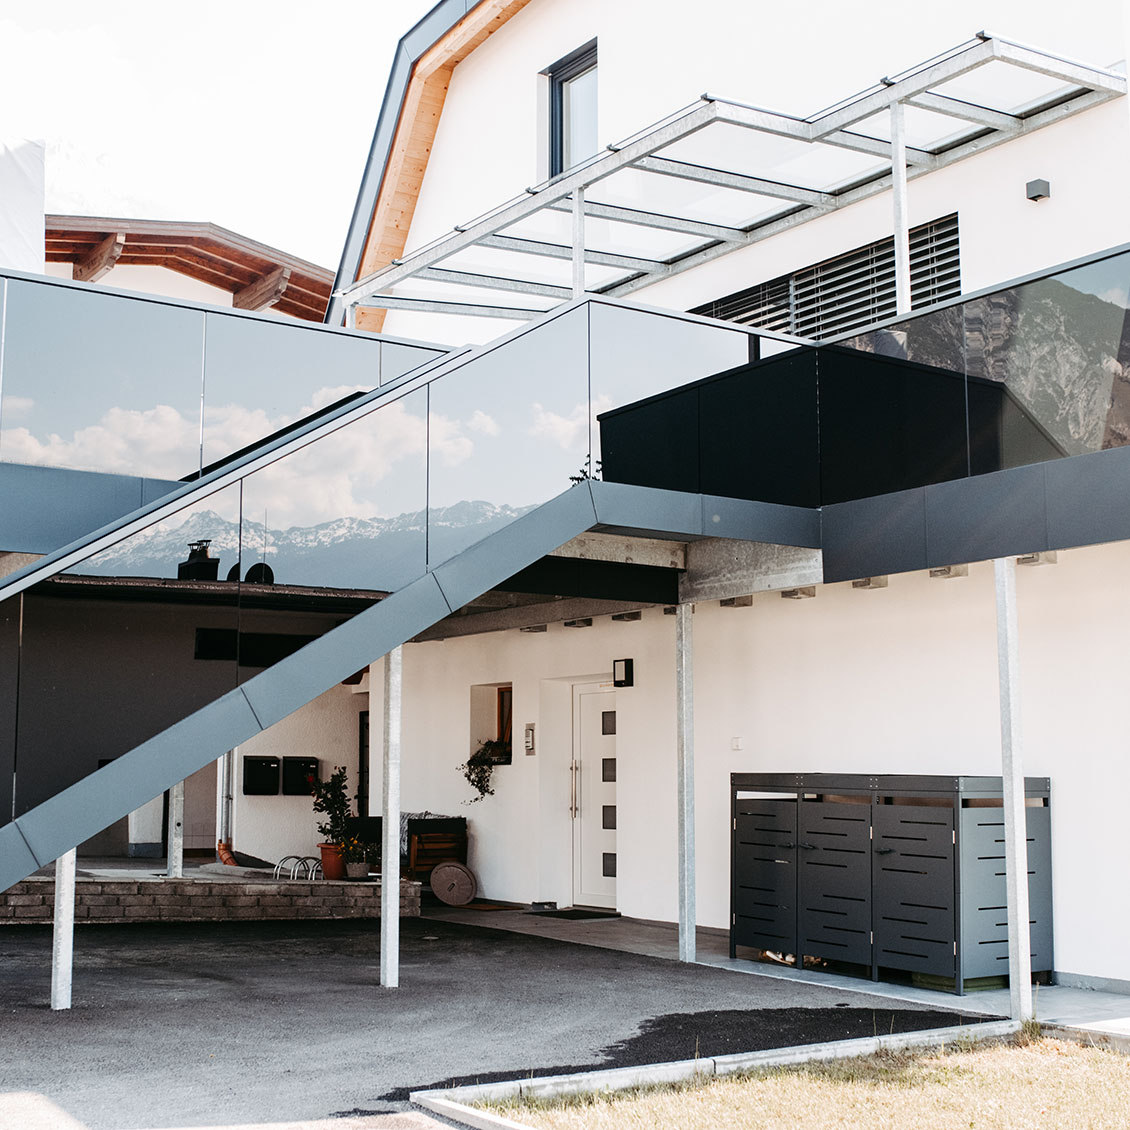 Carport und Überdachung mit Treppe aus Metall und Glas